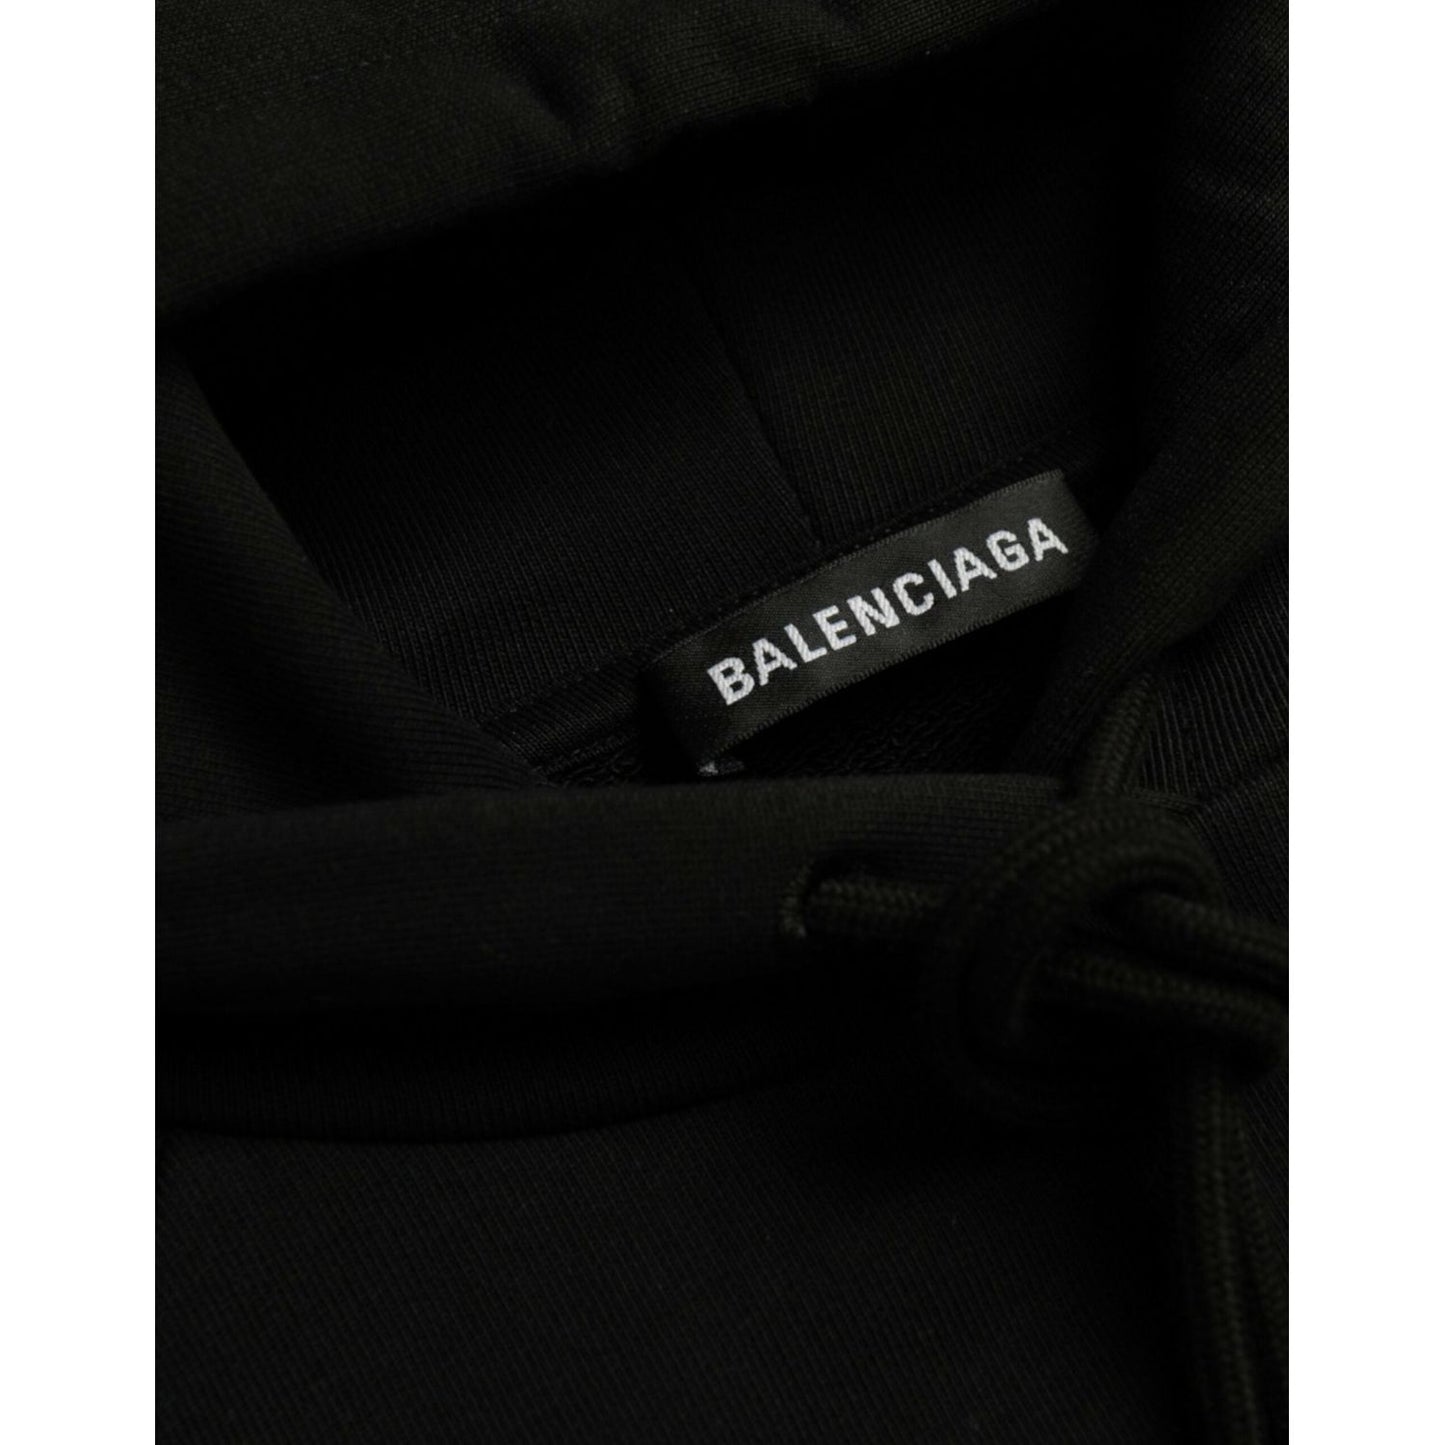 Balenciaga Black Cotton Logo Hooded Pullover Sweatshirt Sweater black-cotton-logo-hooded-pullover-sweatshirt-sweater